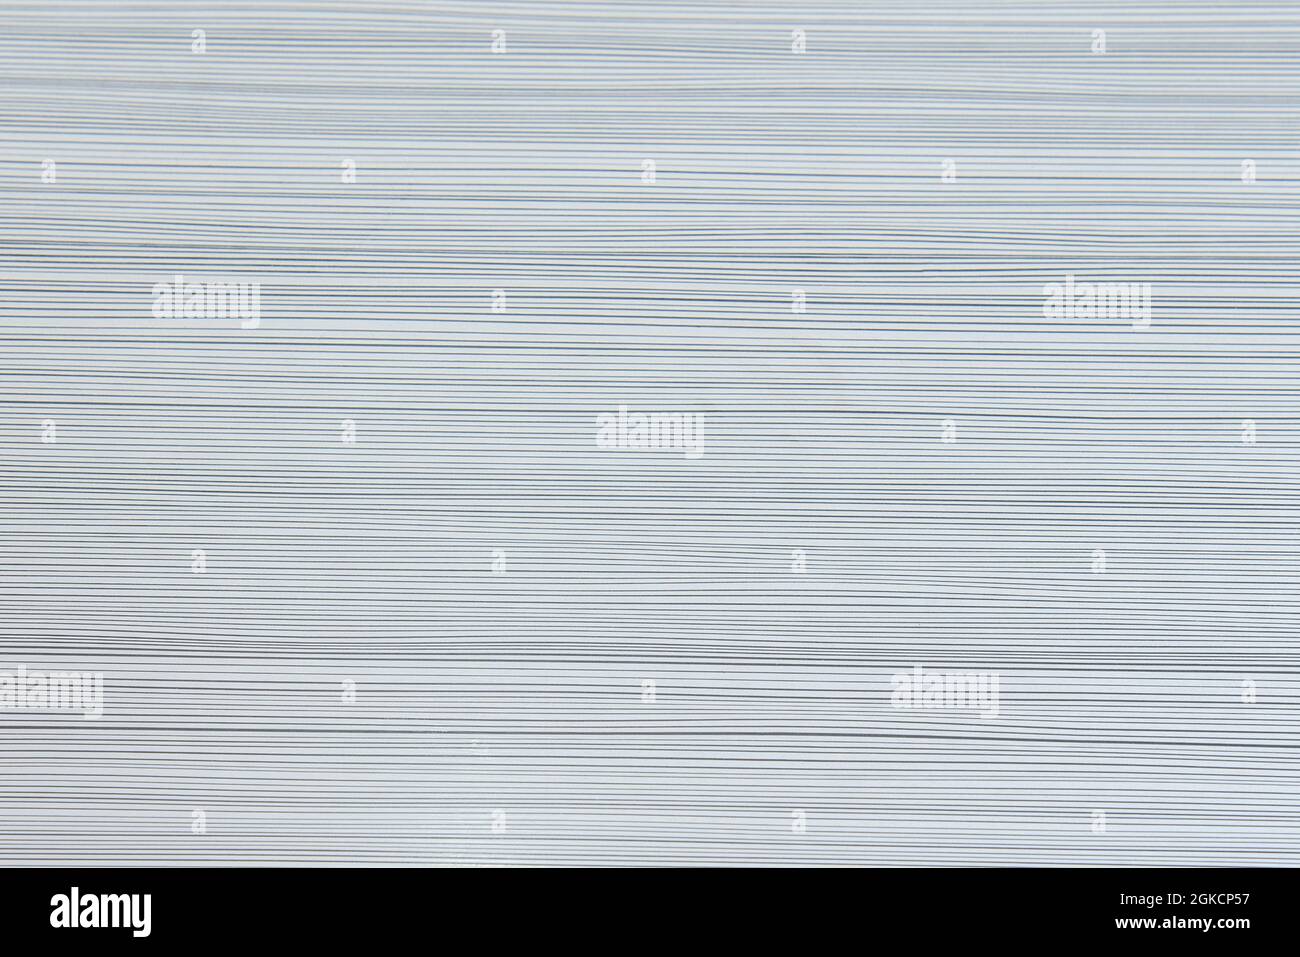 Fondo de mesa con lineas semirrectas negras sobre blanco. Vector textura background Stock Photo